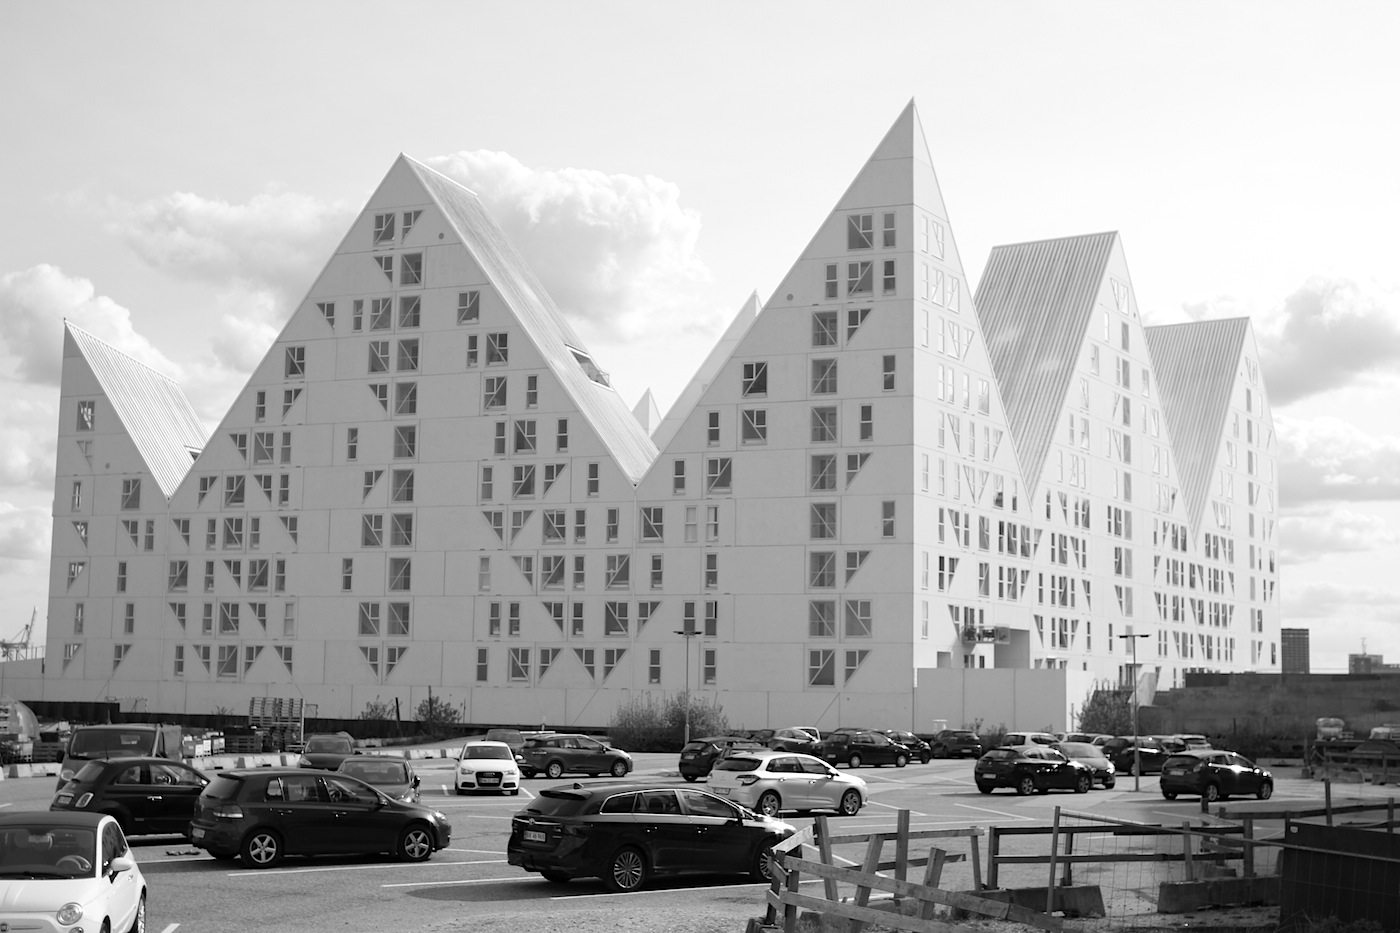 wurde von den vier Architekturbüros Julien de Smedt JDS (Kopenhagen), Louis Paillard (Paris), SeArch (Amsterdam) und CEBRA (Aarhus) entworfen.